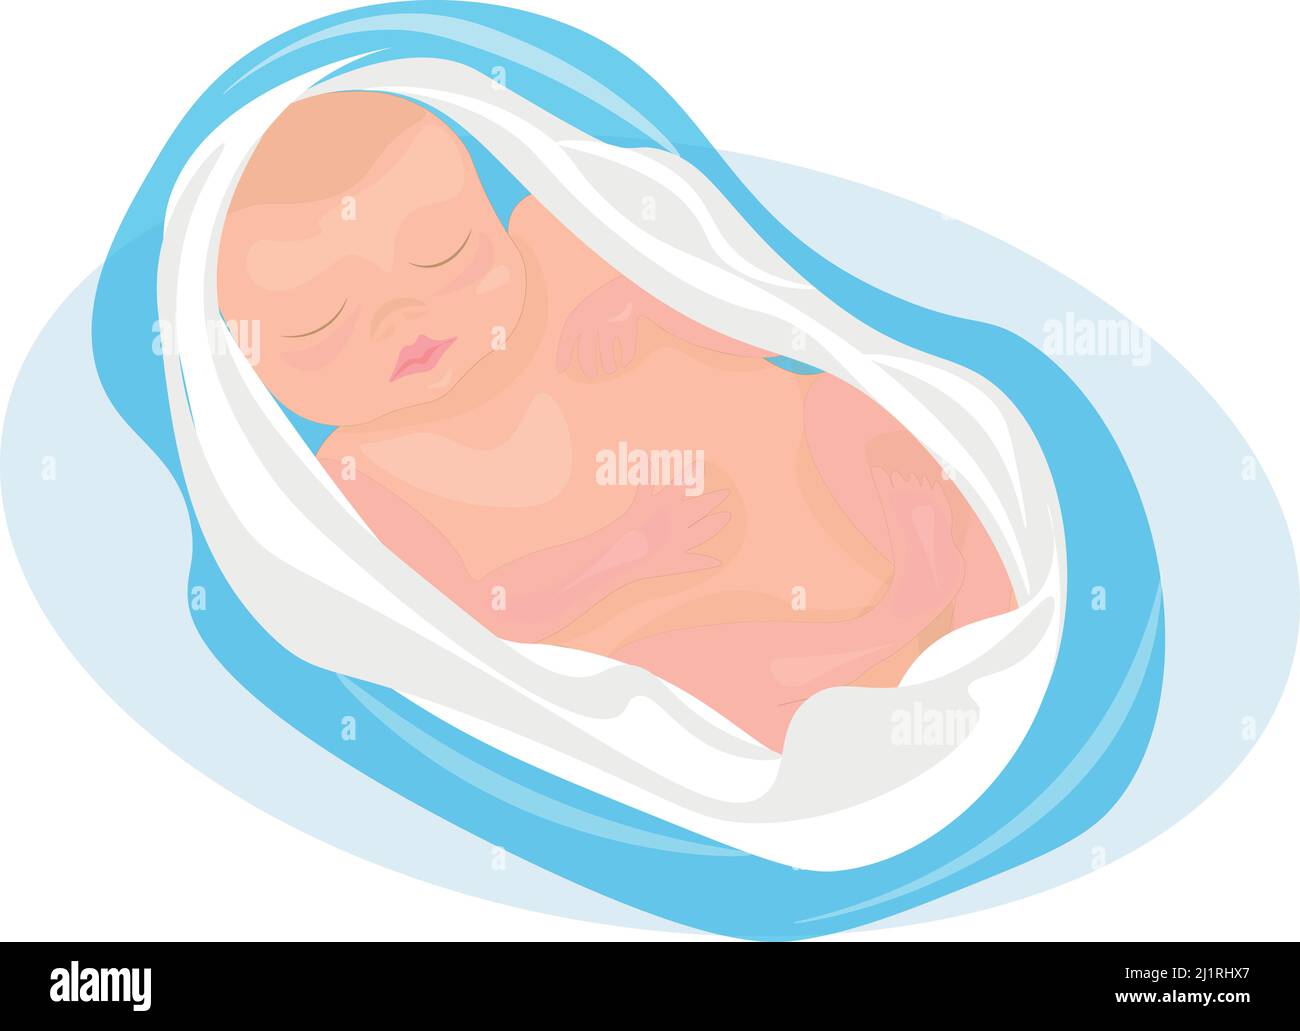 Niedliches Baby Illustration.das neugeborene Baby schläft süß und sieht schöne Träume. Pflege und Gesundheit des Babys von Herzen. Stock Vektor